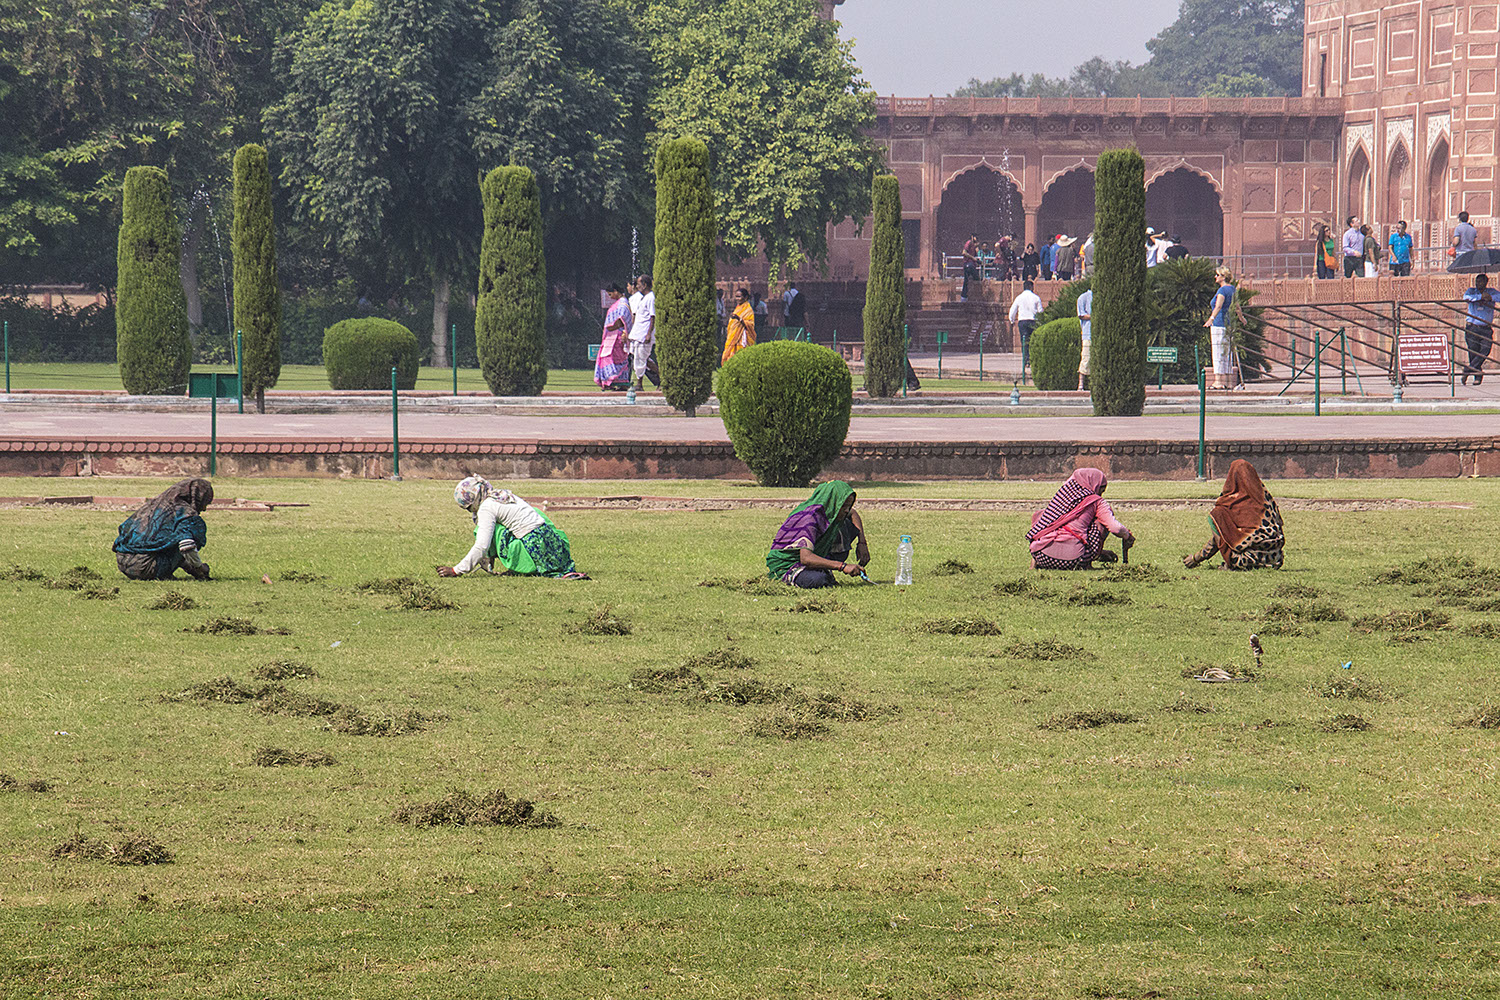 Grass Cutting, with Scissors, near Taj Mahal.